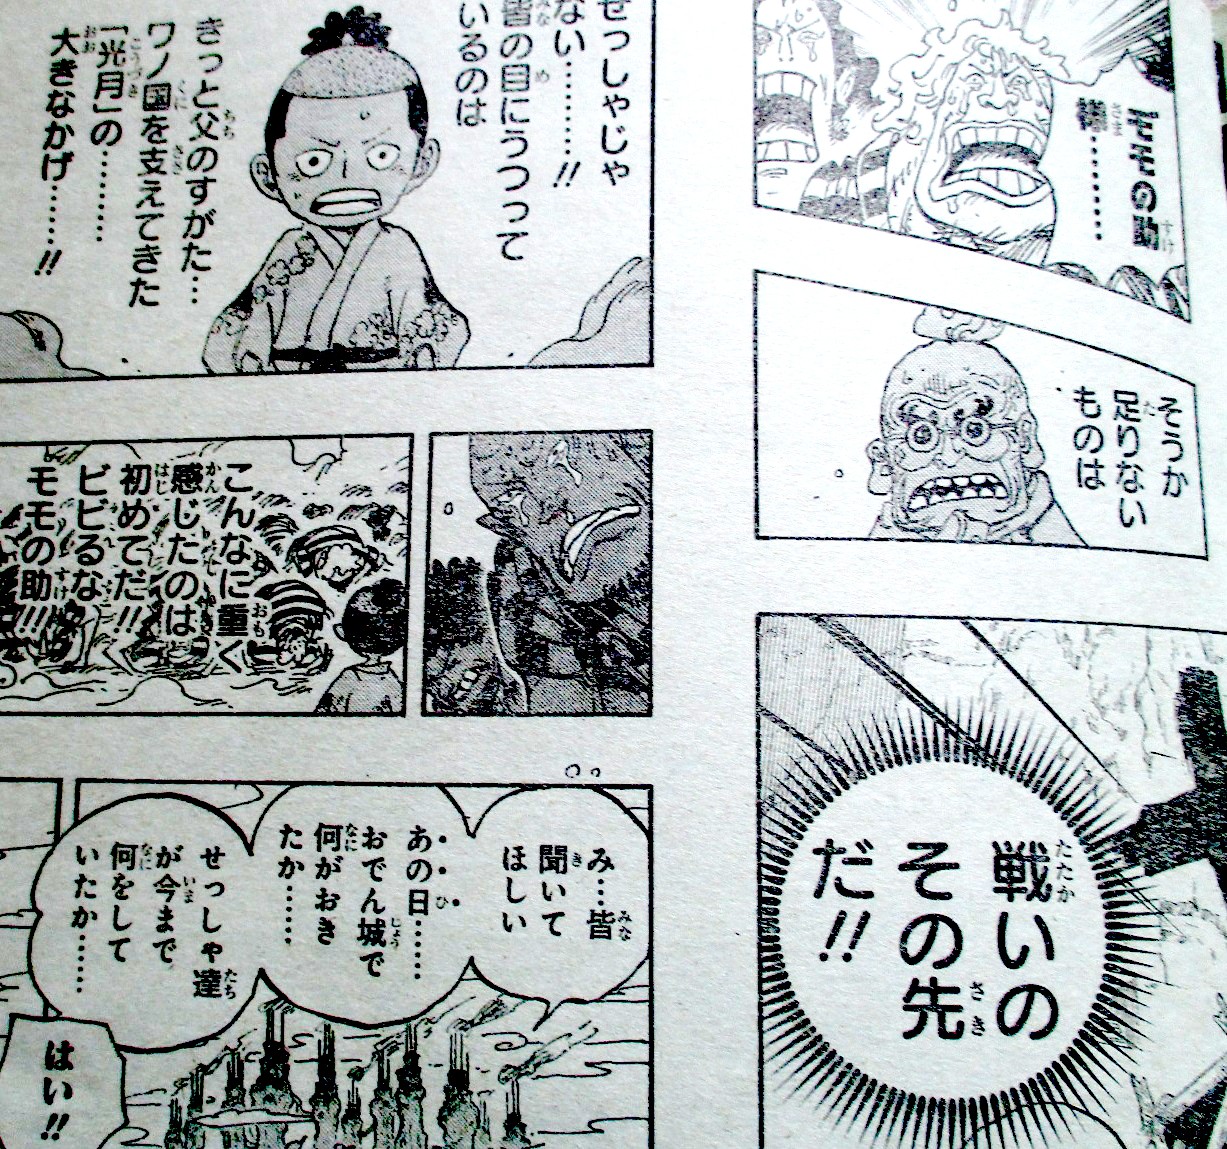 One Piece Spoiler Chap 950 Kid Từ Chối Lien Minh Với Luffy Zoro đi Tim Lại Shusui để Chuẩn Bị Cho Trận Quyết Chiến